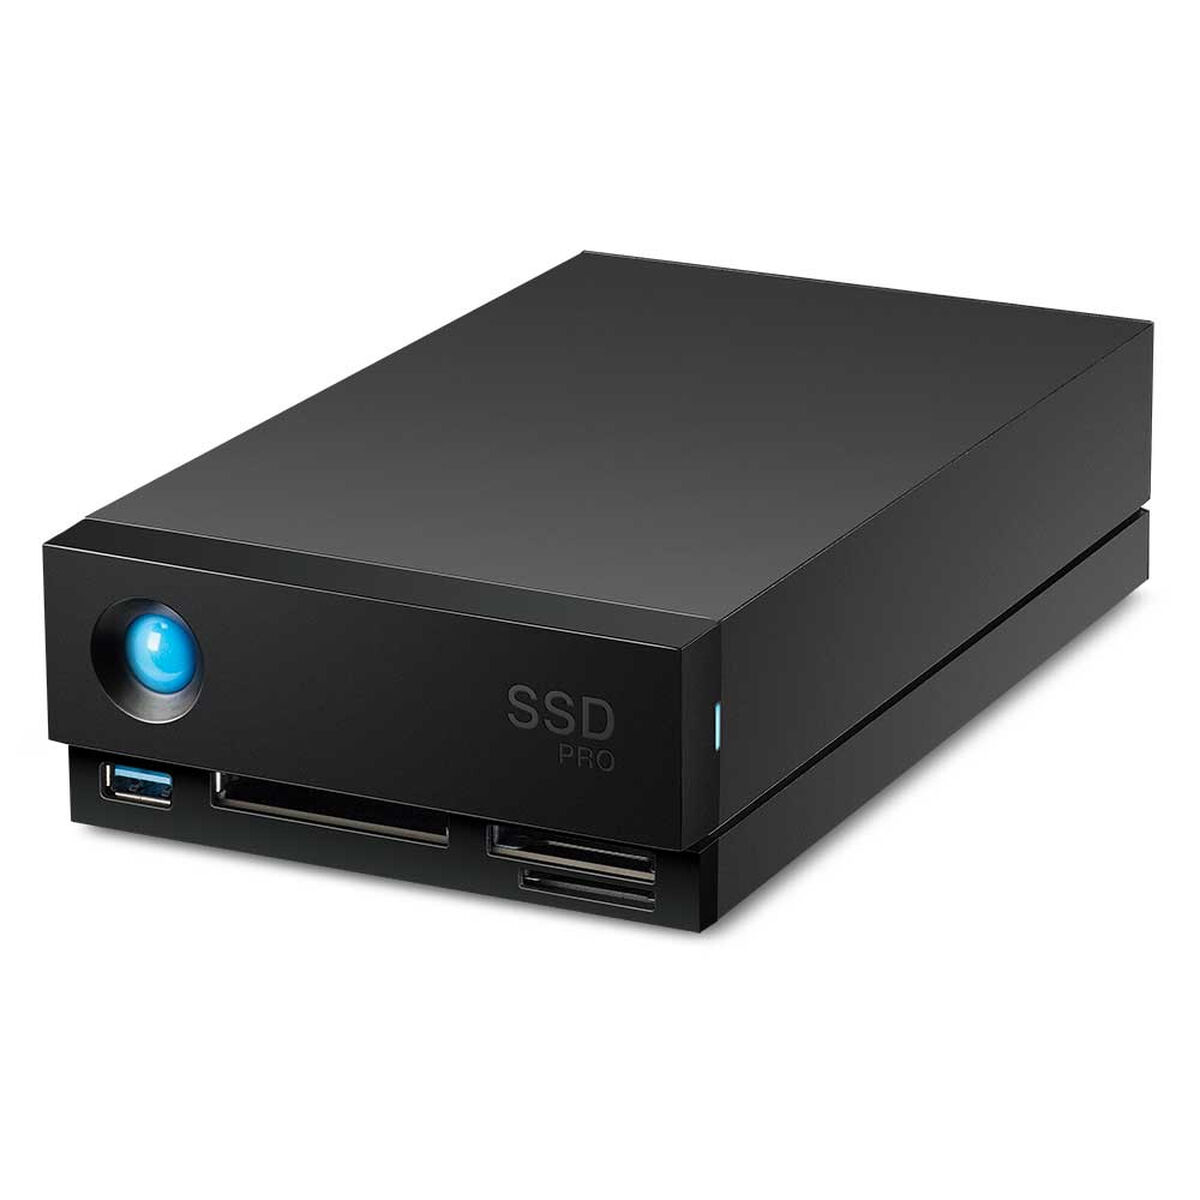 4TB SSD 1BIG extern, TB USB SSD, DOCK SEAGATE 3.1, Schwarz PRO 4 TB3 STHW4000800